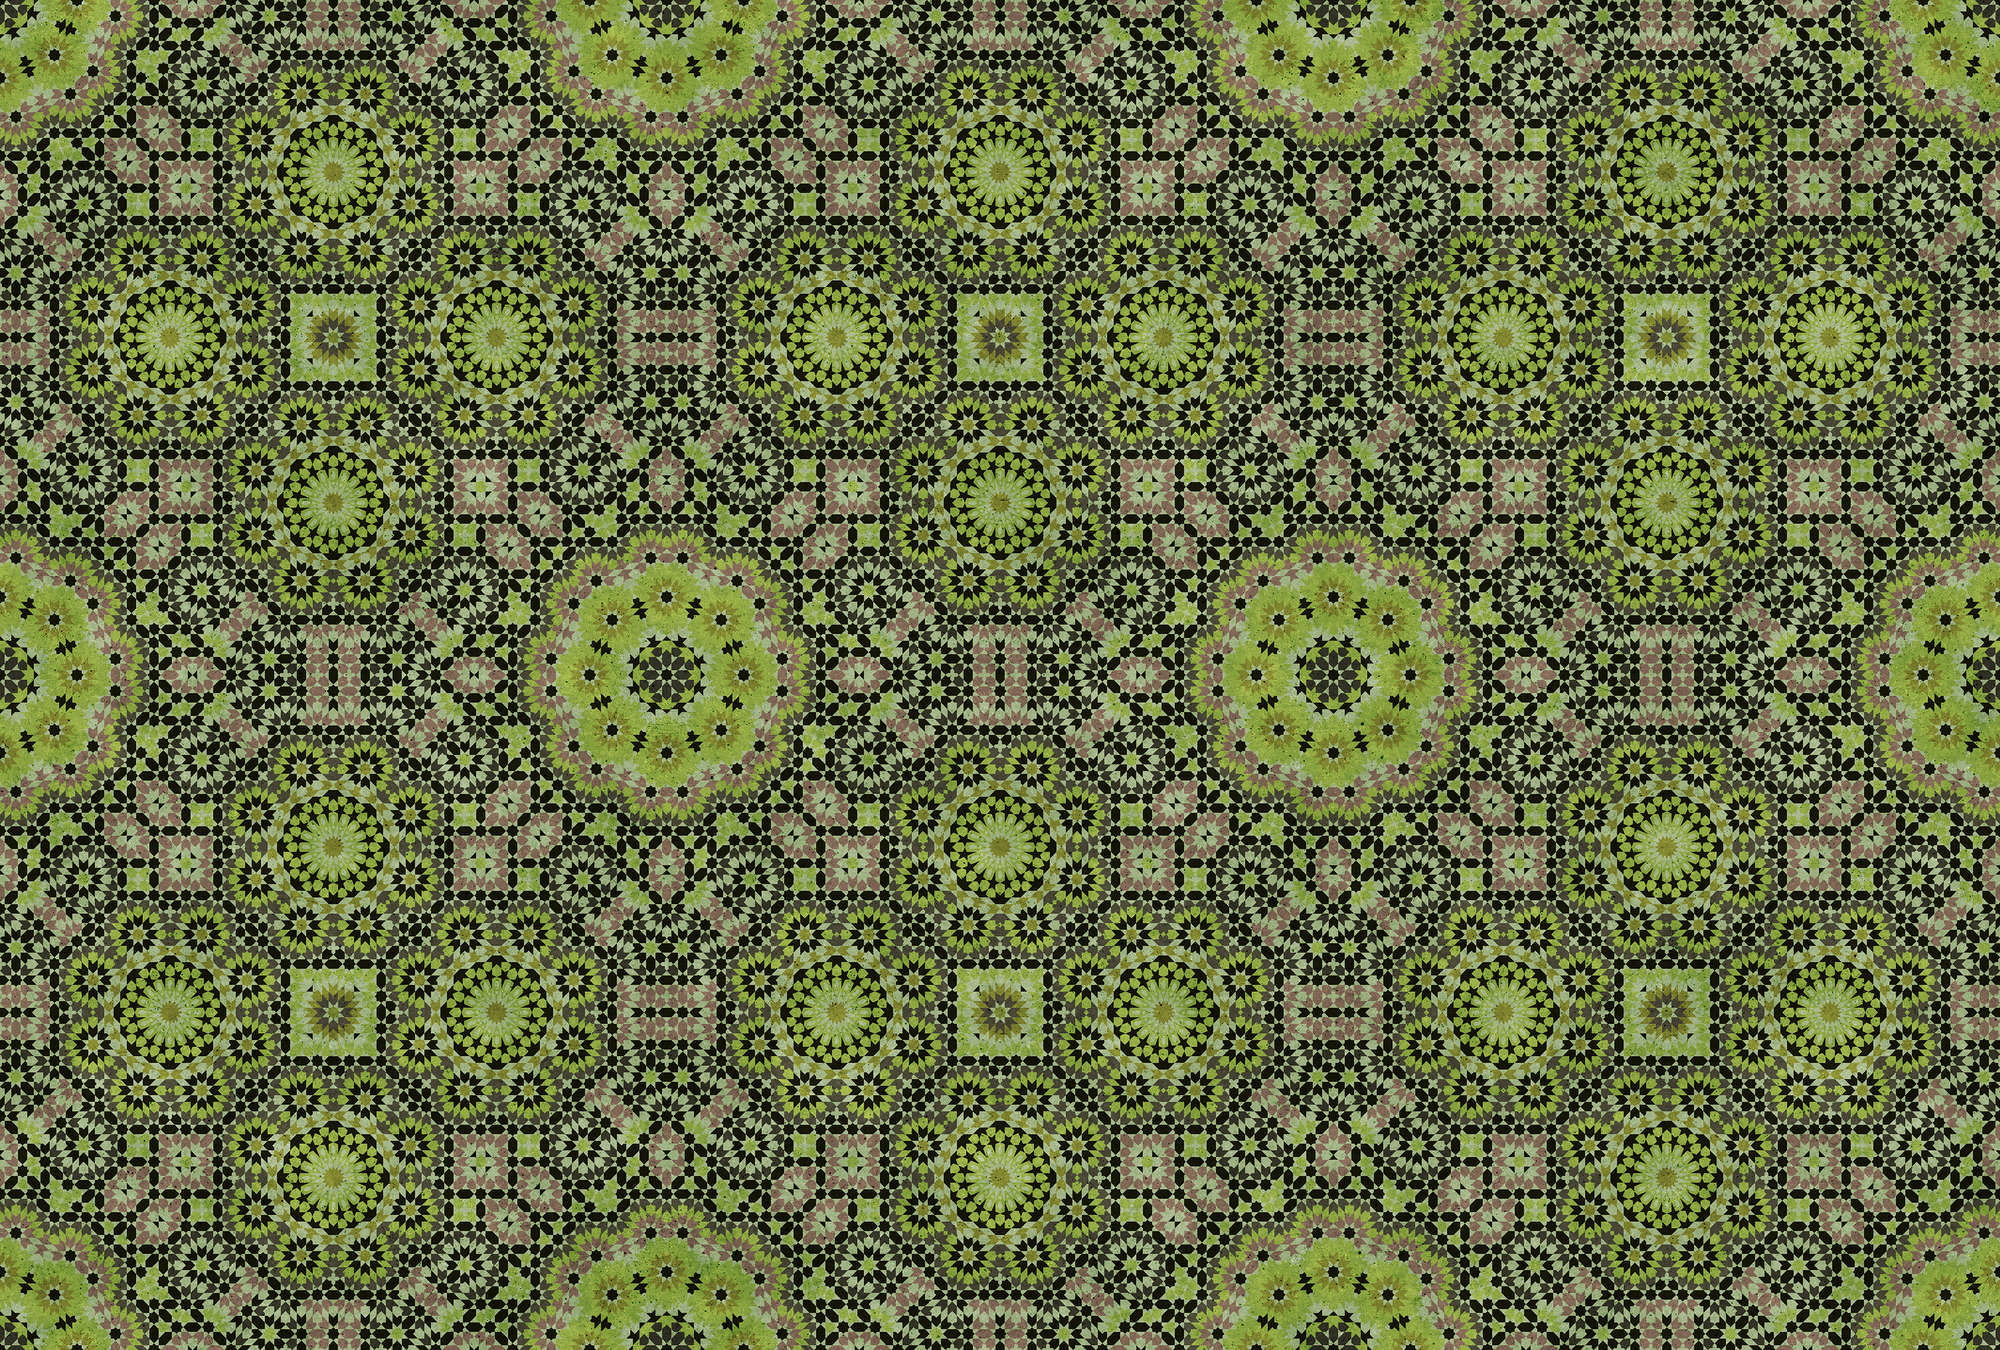             Groen fotobehang met grafisch mozaïekpatroon
        